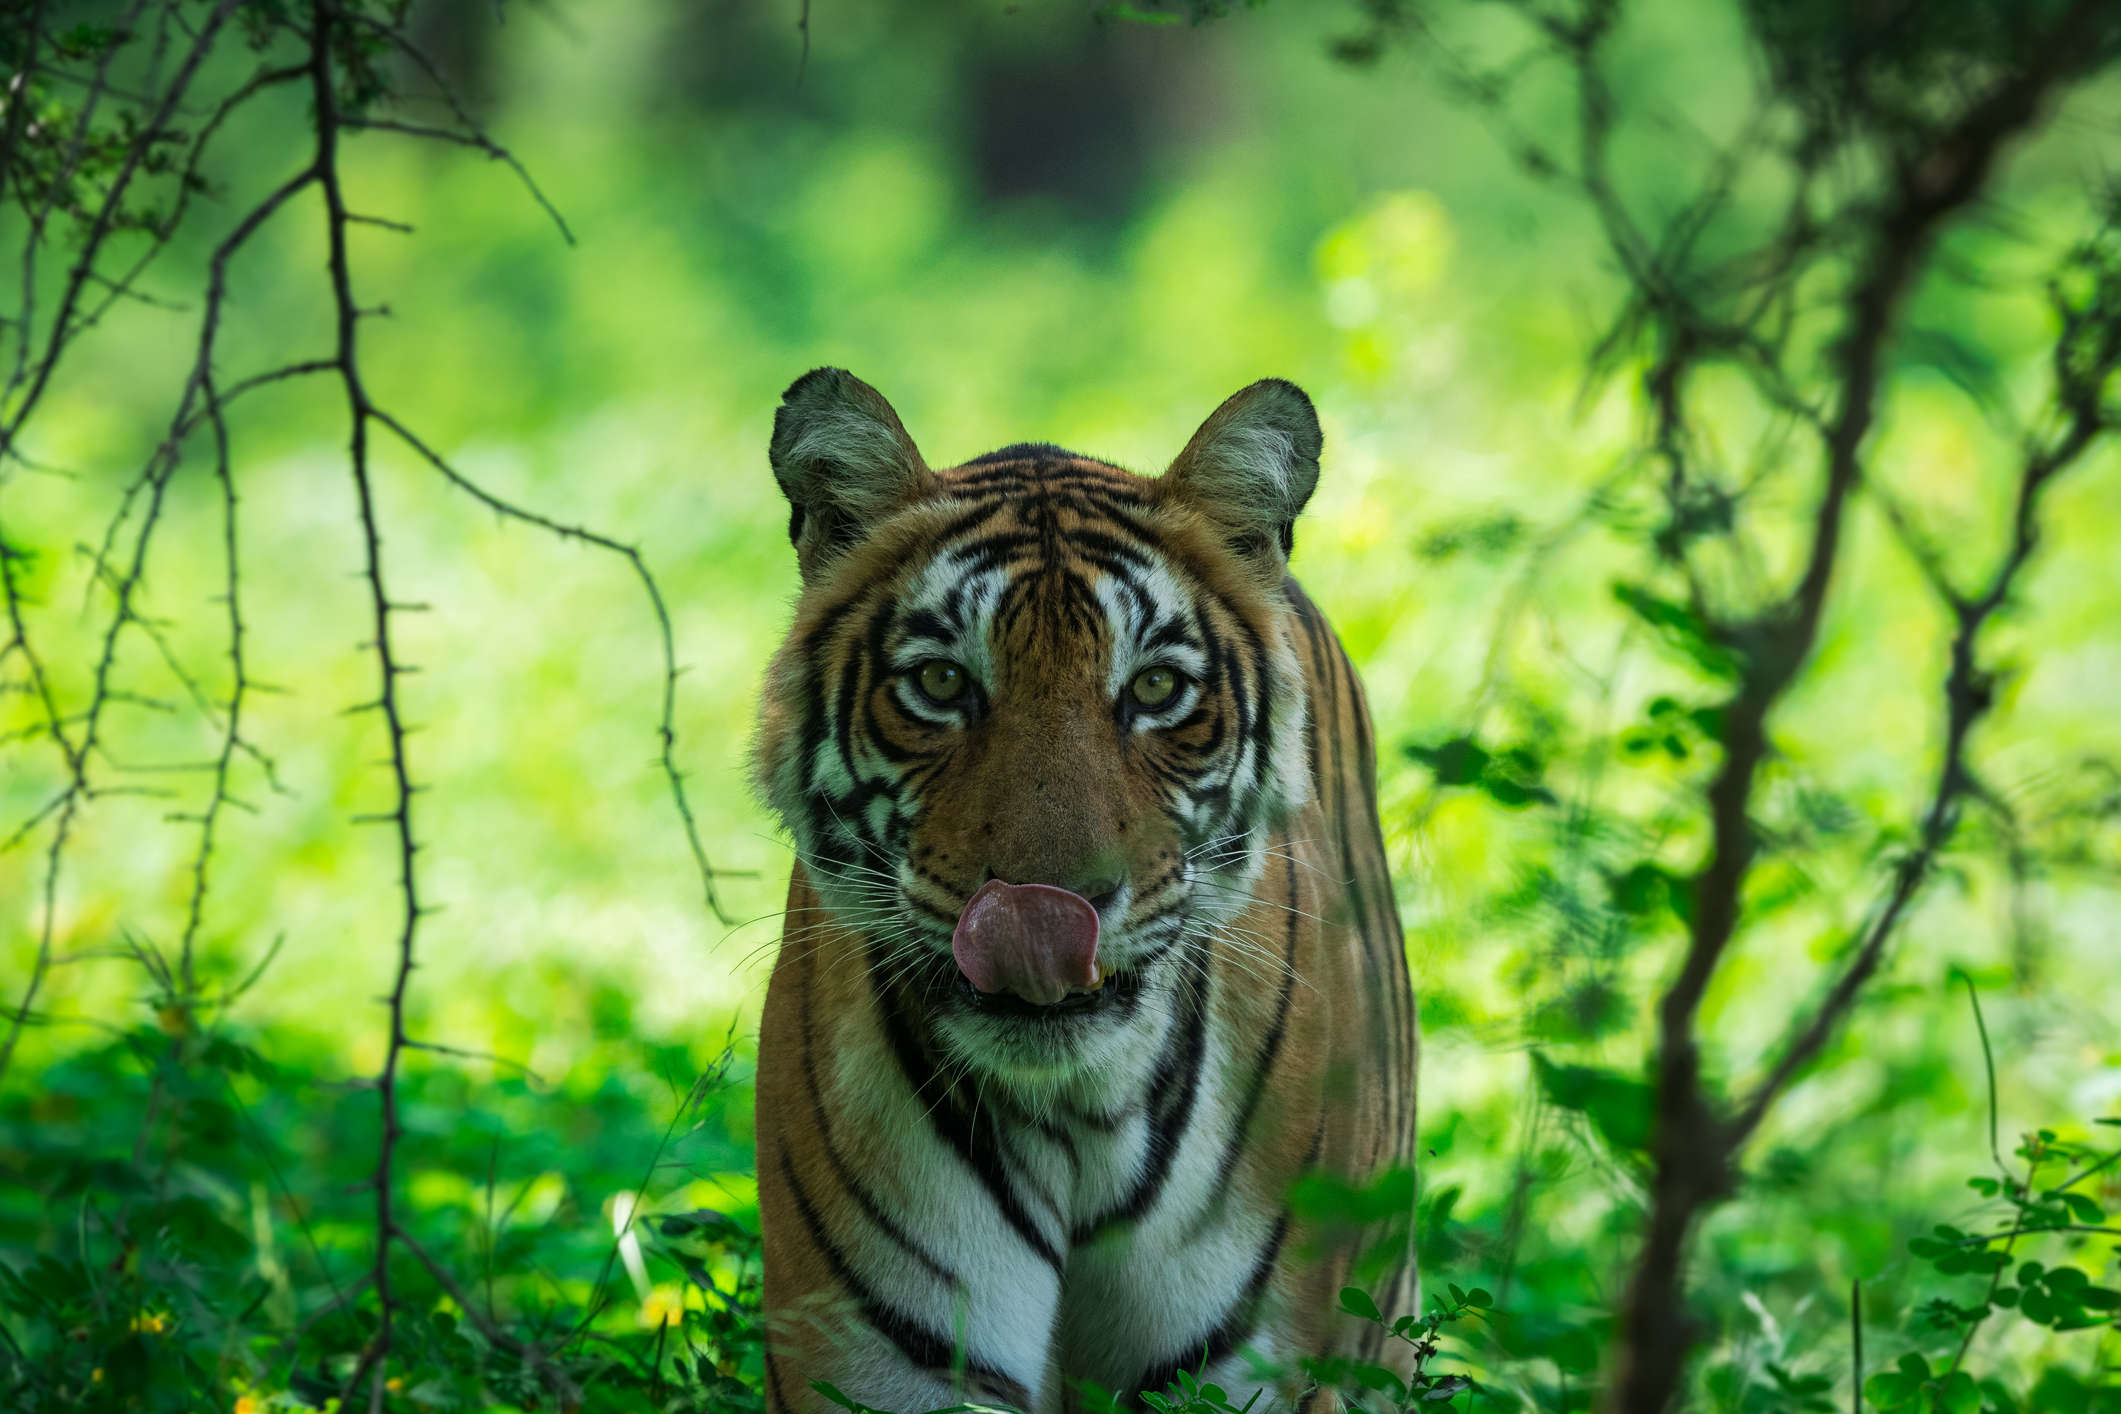 Tiger safari resumes at Ranthambore National Park